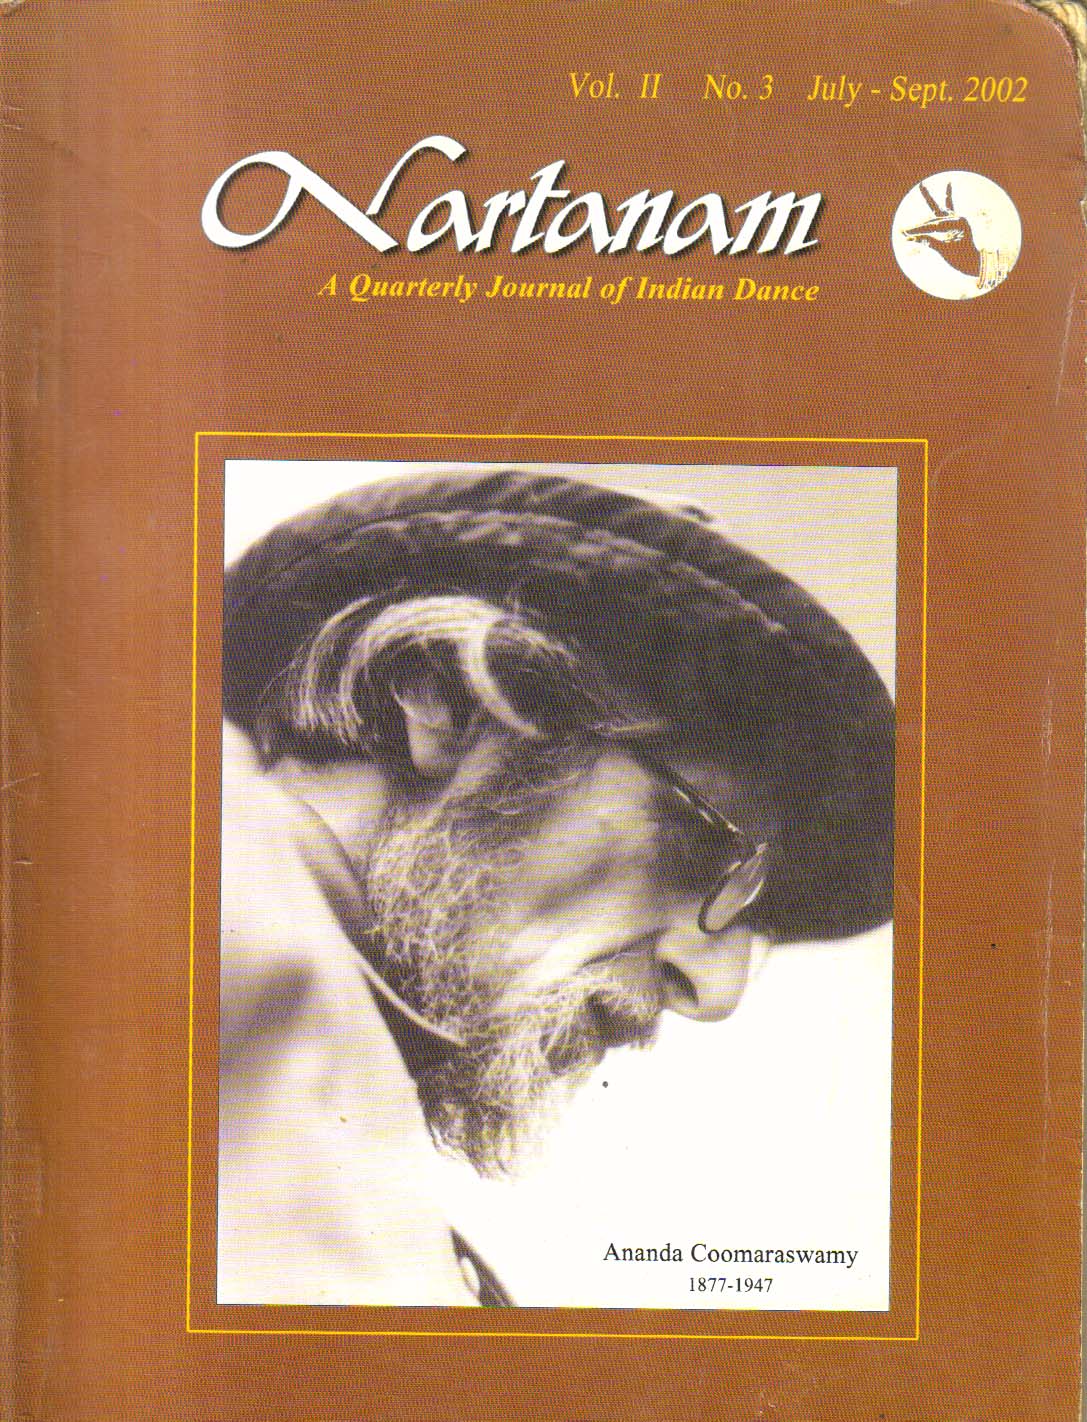 Nartanam Vol. II No.3 July-Sept 2002